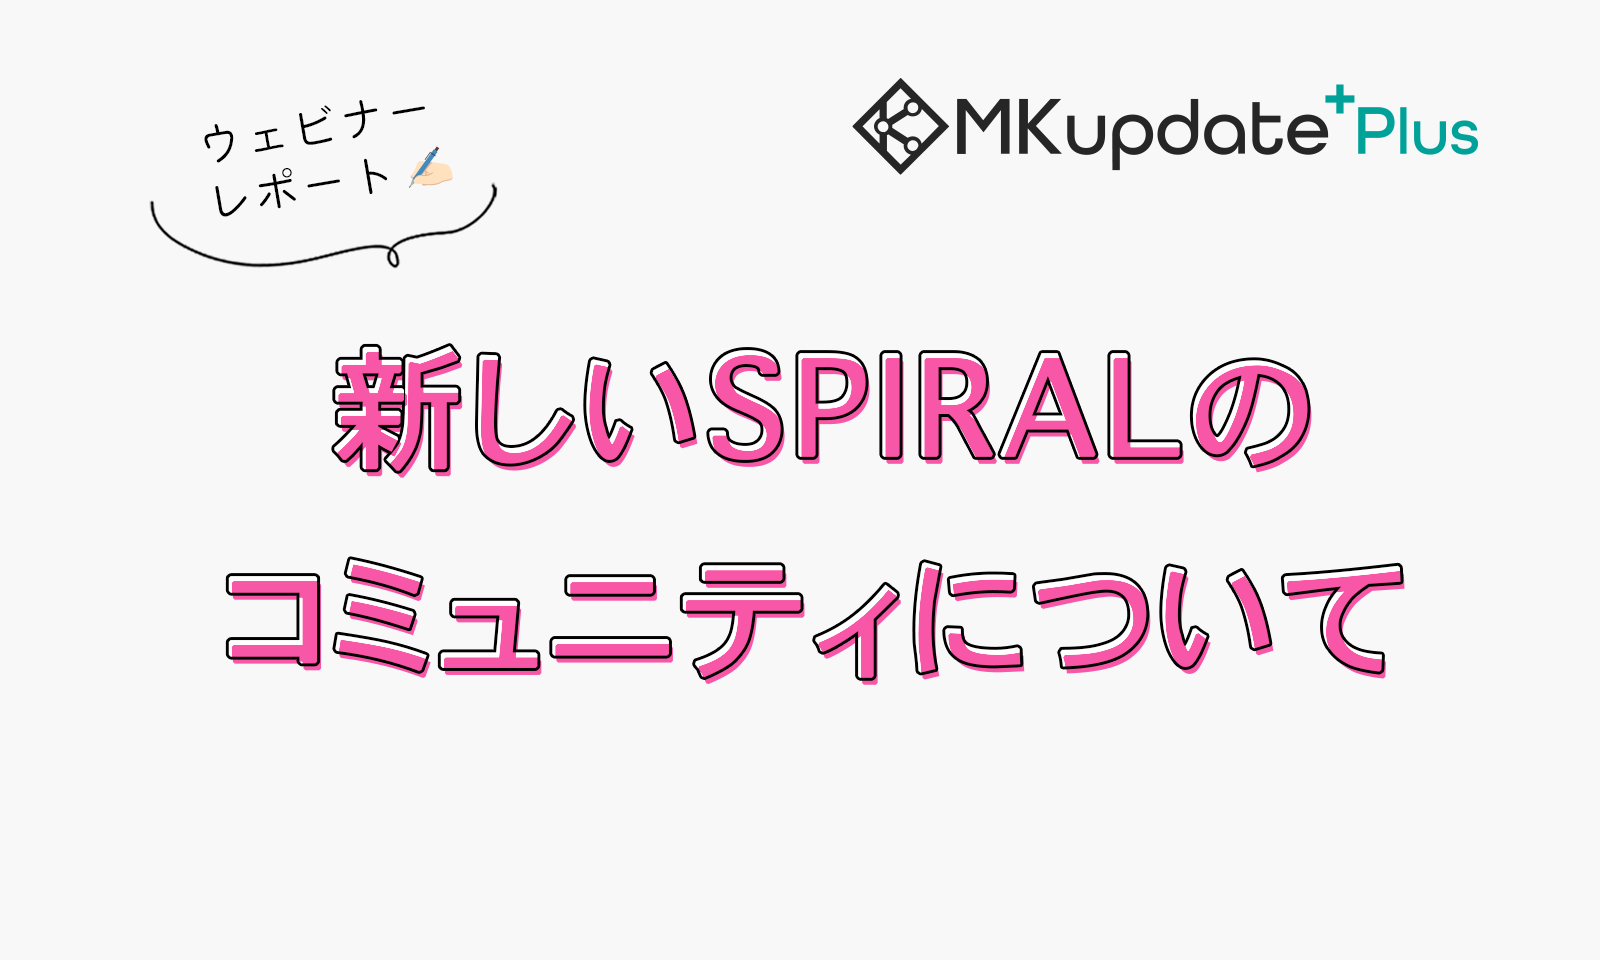 MKupdate Plus +「 新しいSPIRALのコミュニティについて」を開催しました。